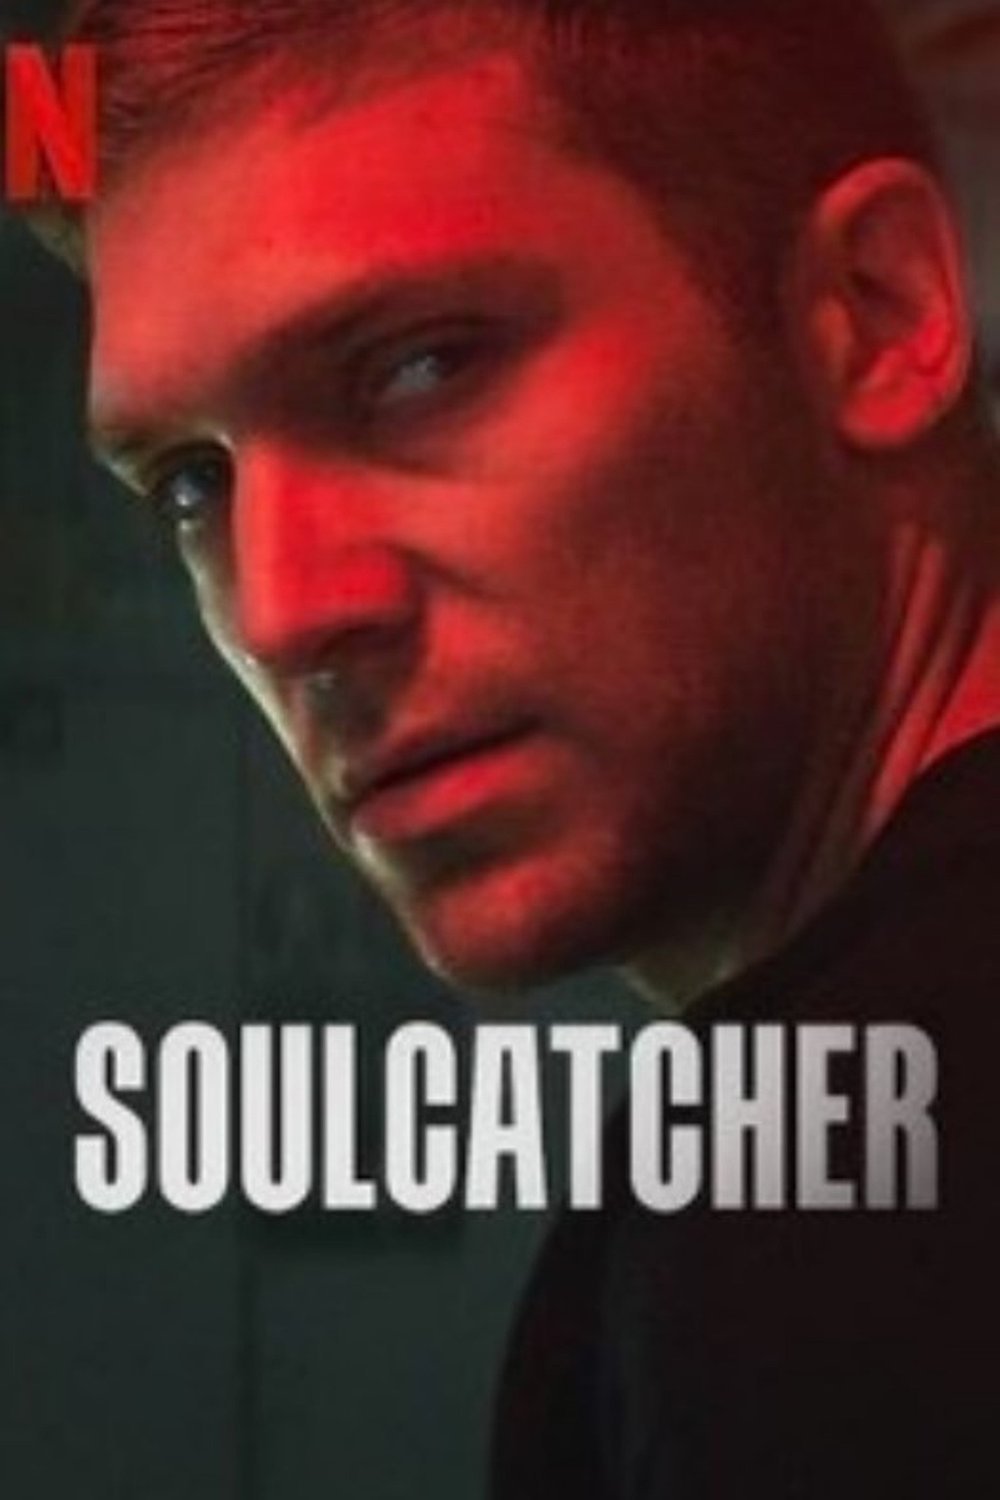 L'affiche originale du film Soulcatcher en polonais